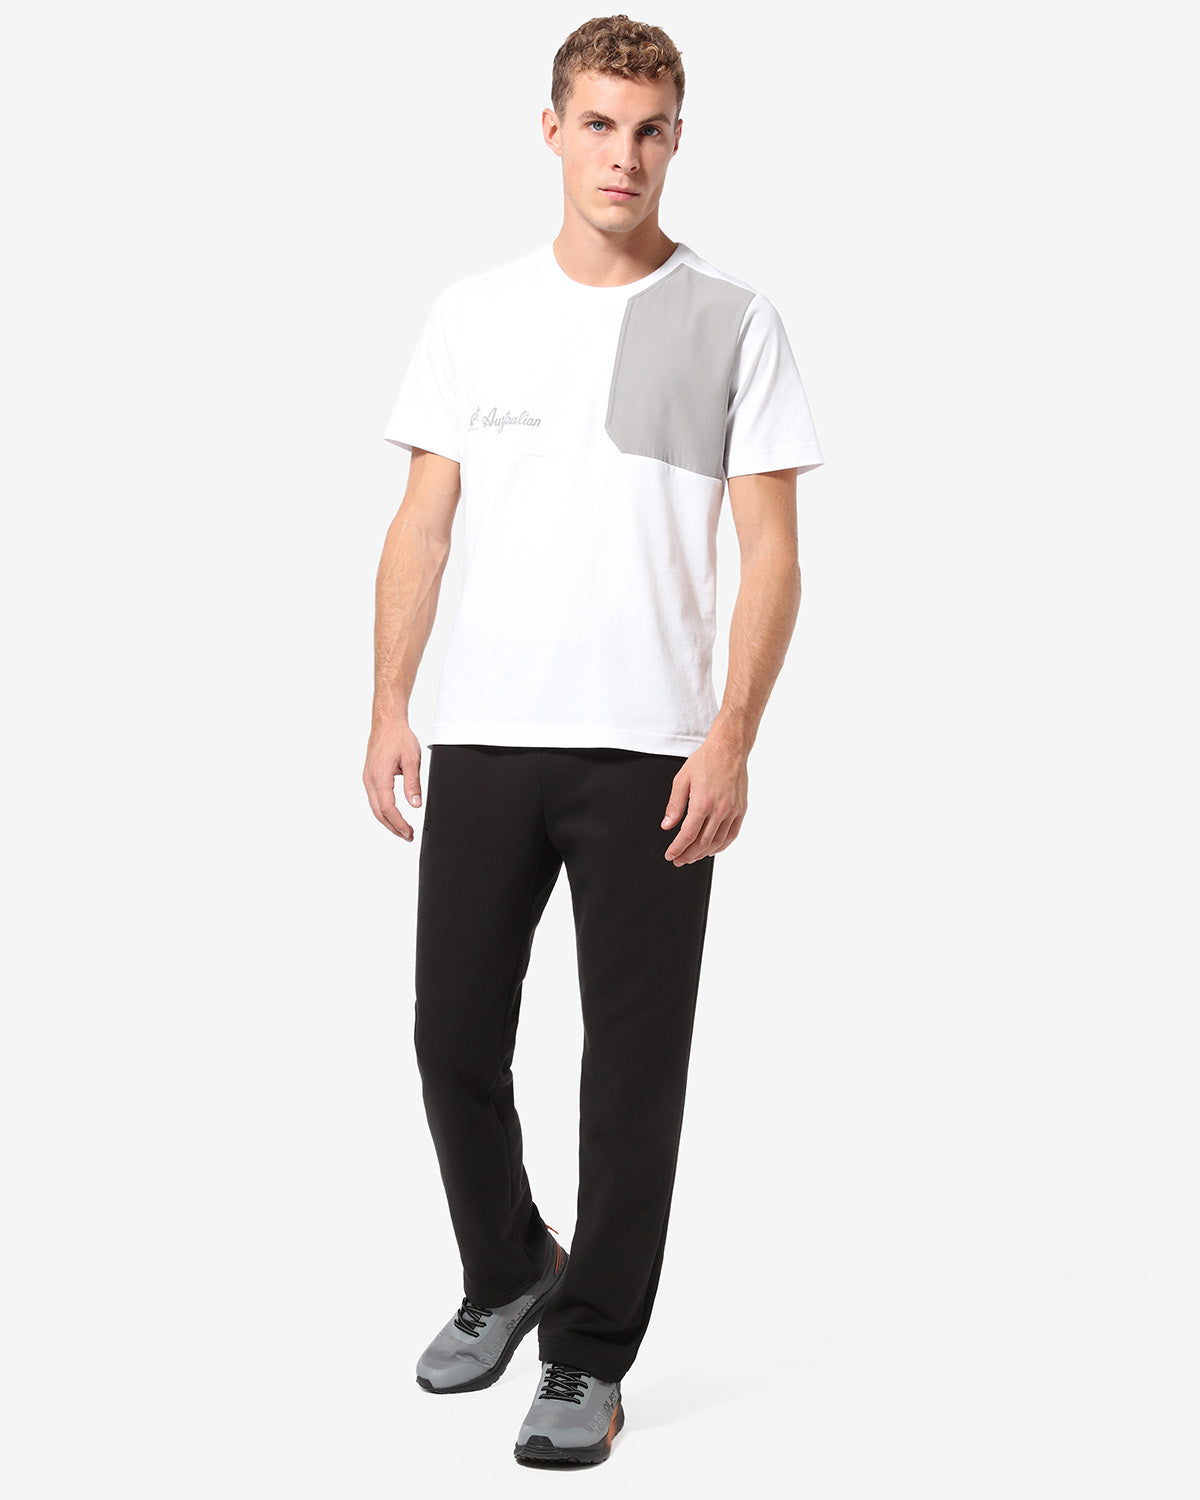 Tek Fleece T-Shirt: Australian Sportswear